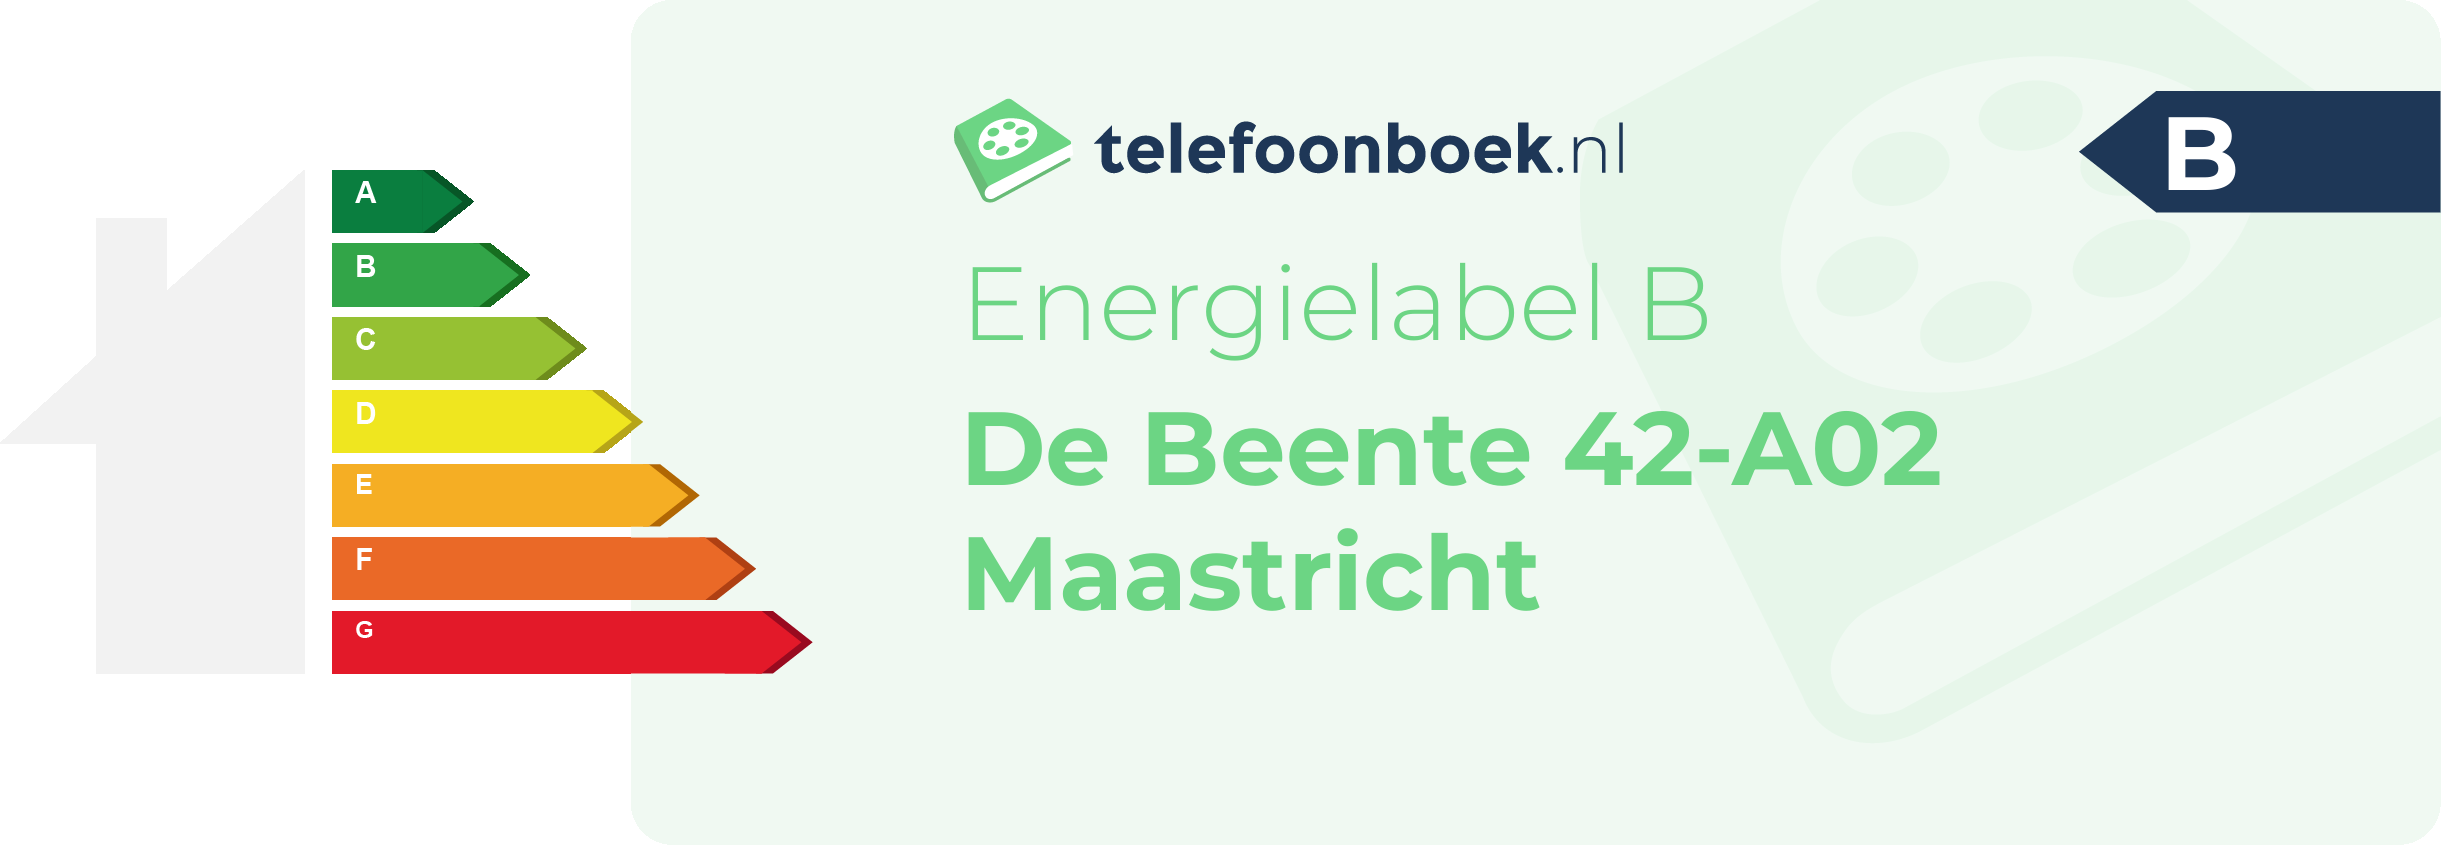 Energielabel De Beente 42-A02 Maastricht